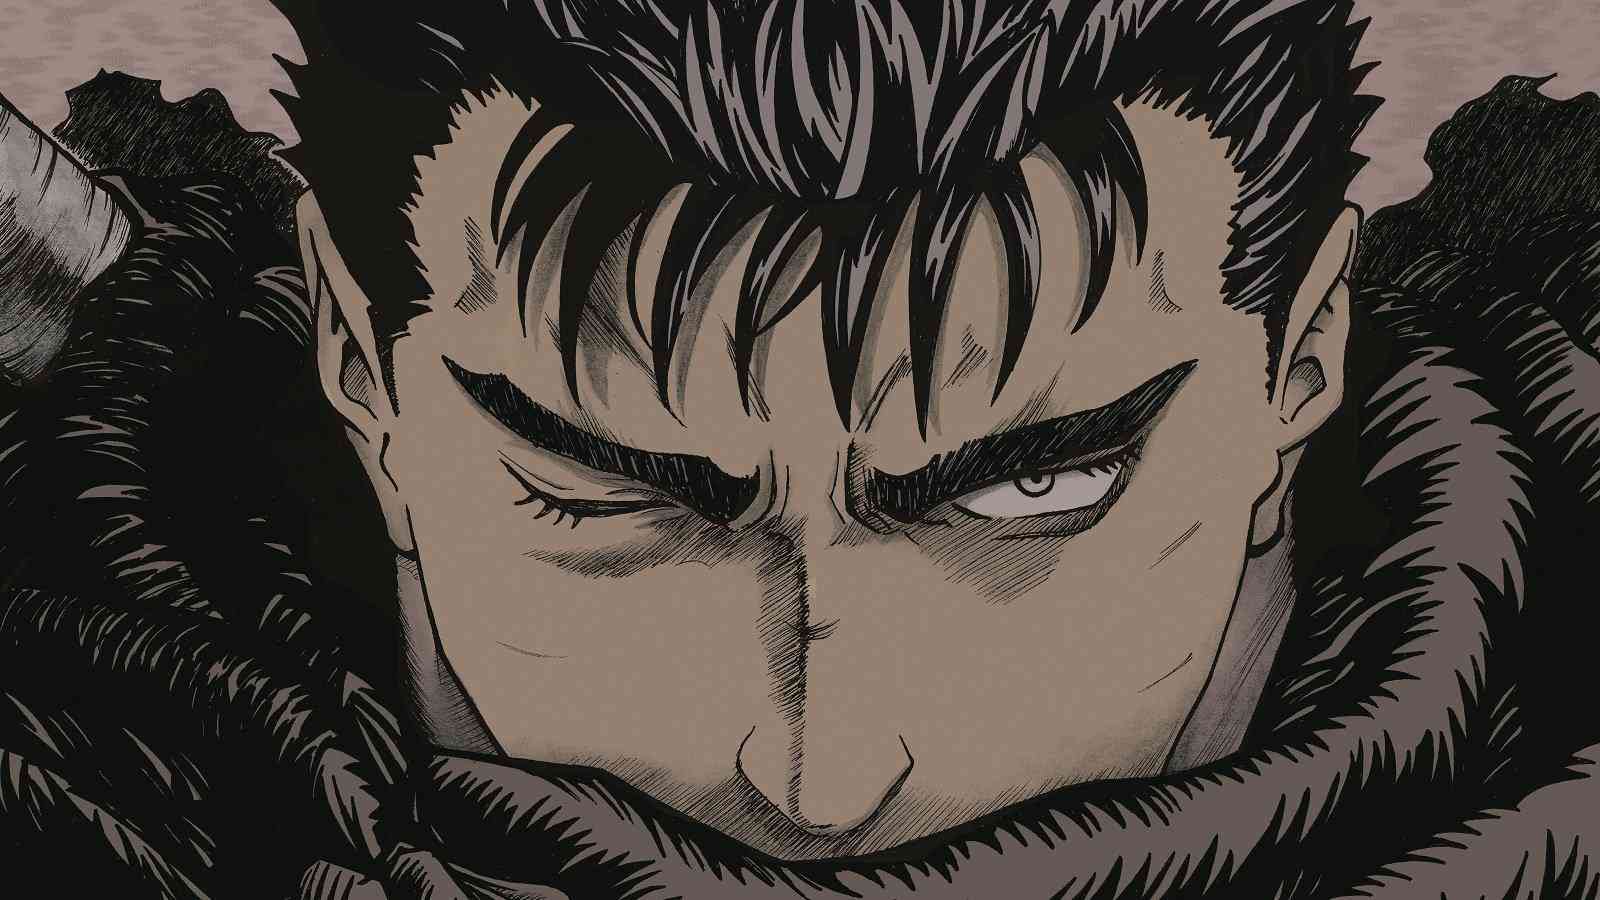 Họa sĩ mới của manga Berserk hé lộ thêm về quá trình hoàn thành tác phẩm